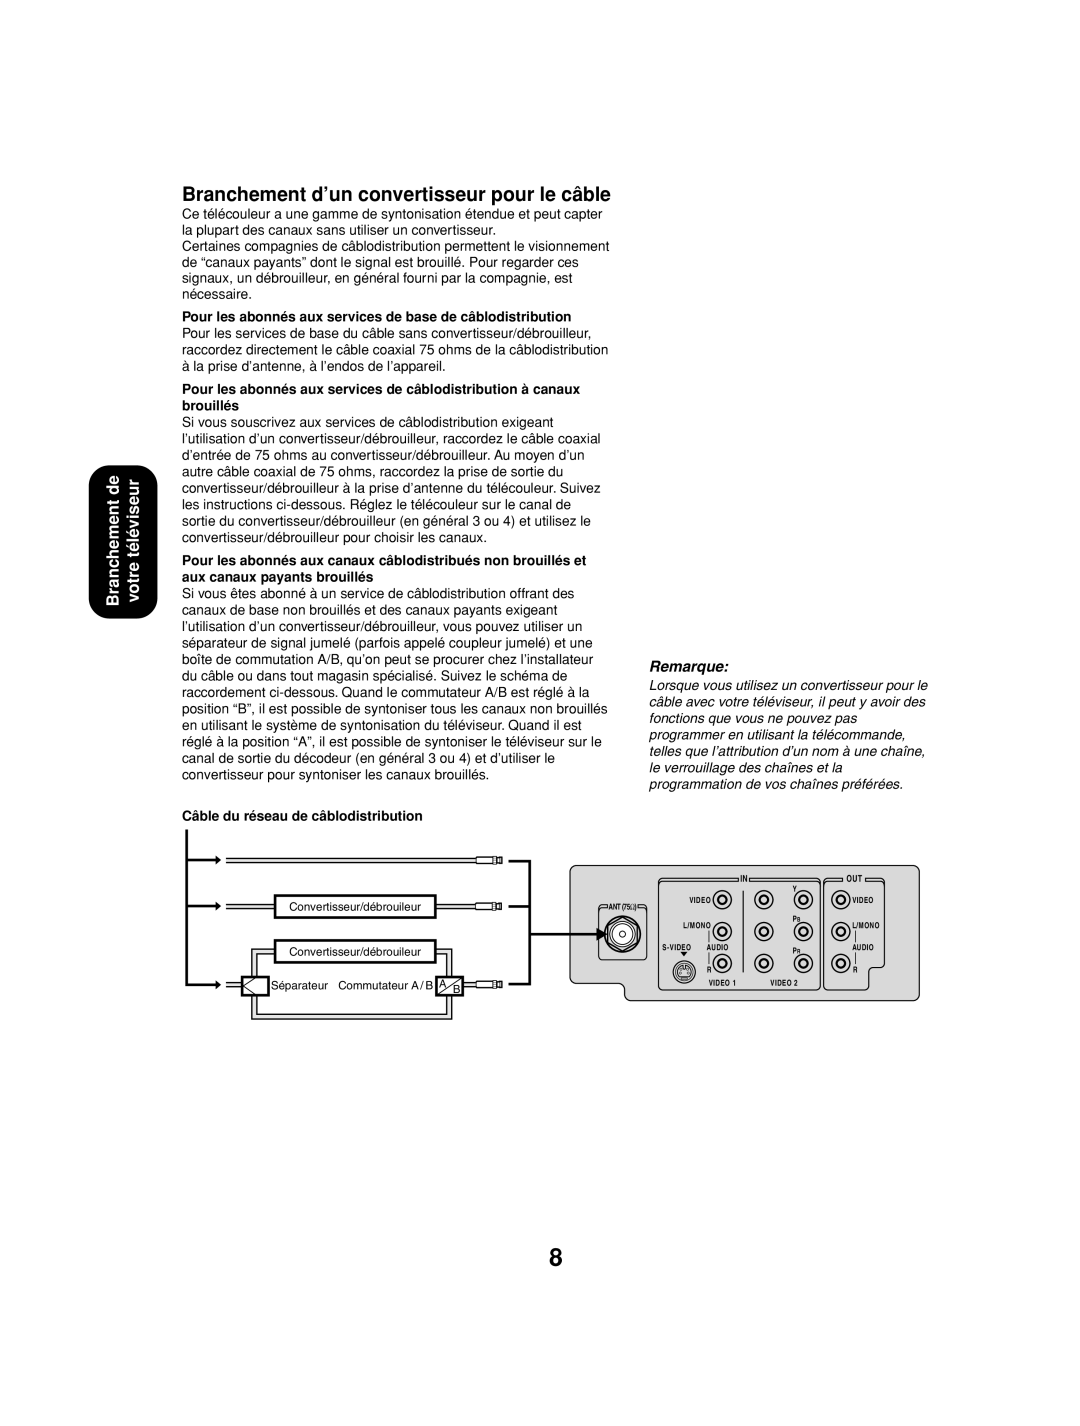 Toshiba 27AF53 appendix Branchement d’un convertisseur pour le câble, Câble du réseau de câblodistribution 